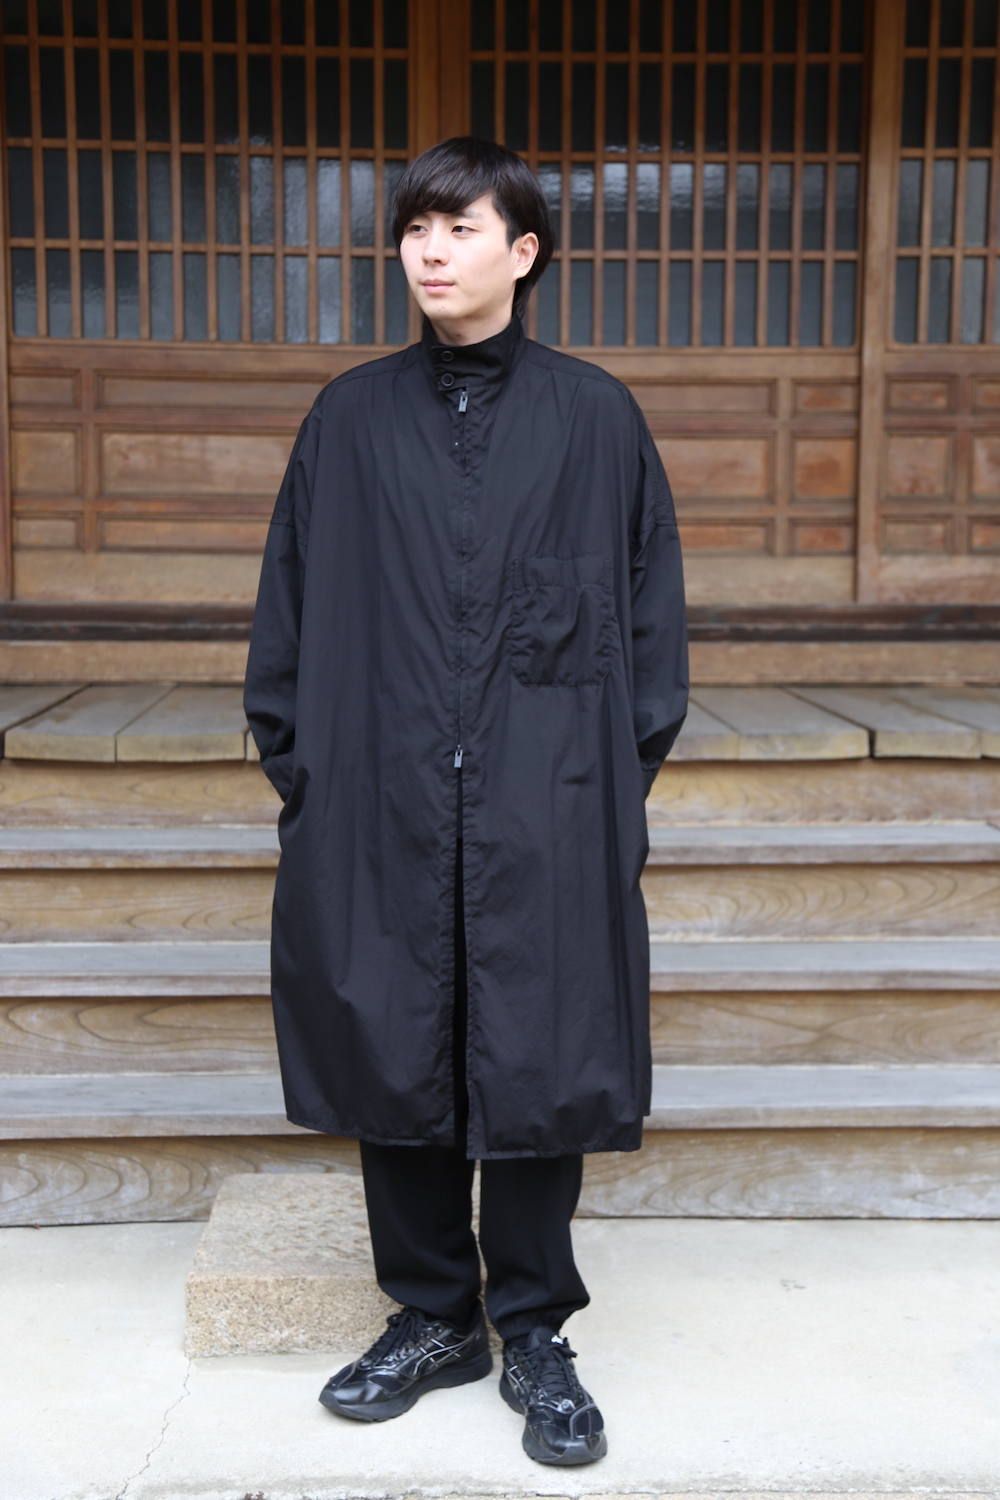 Yohji Yamamoto ロングシャツ サイズ3 黒 ブラック | www.unimac.az